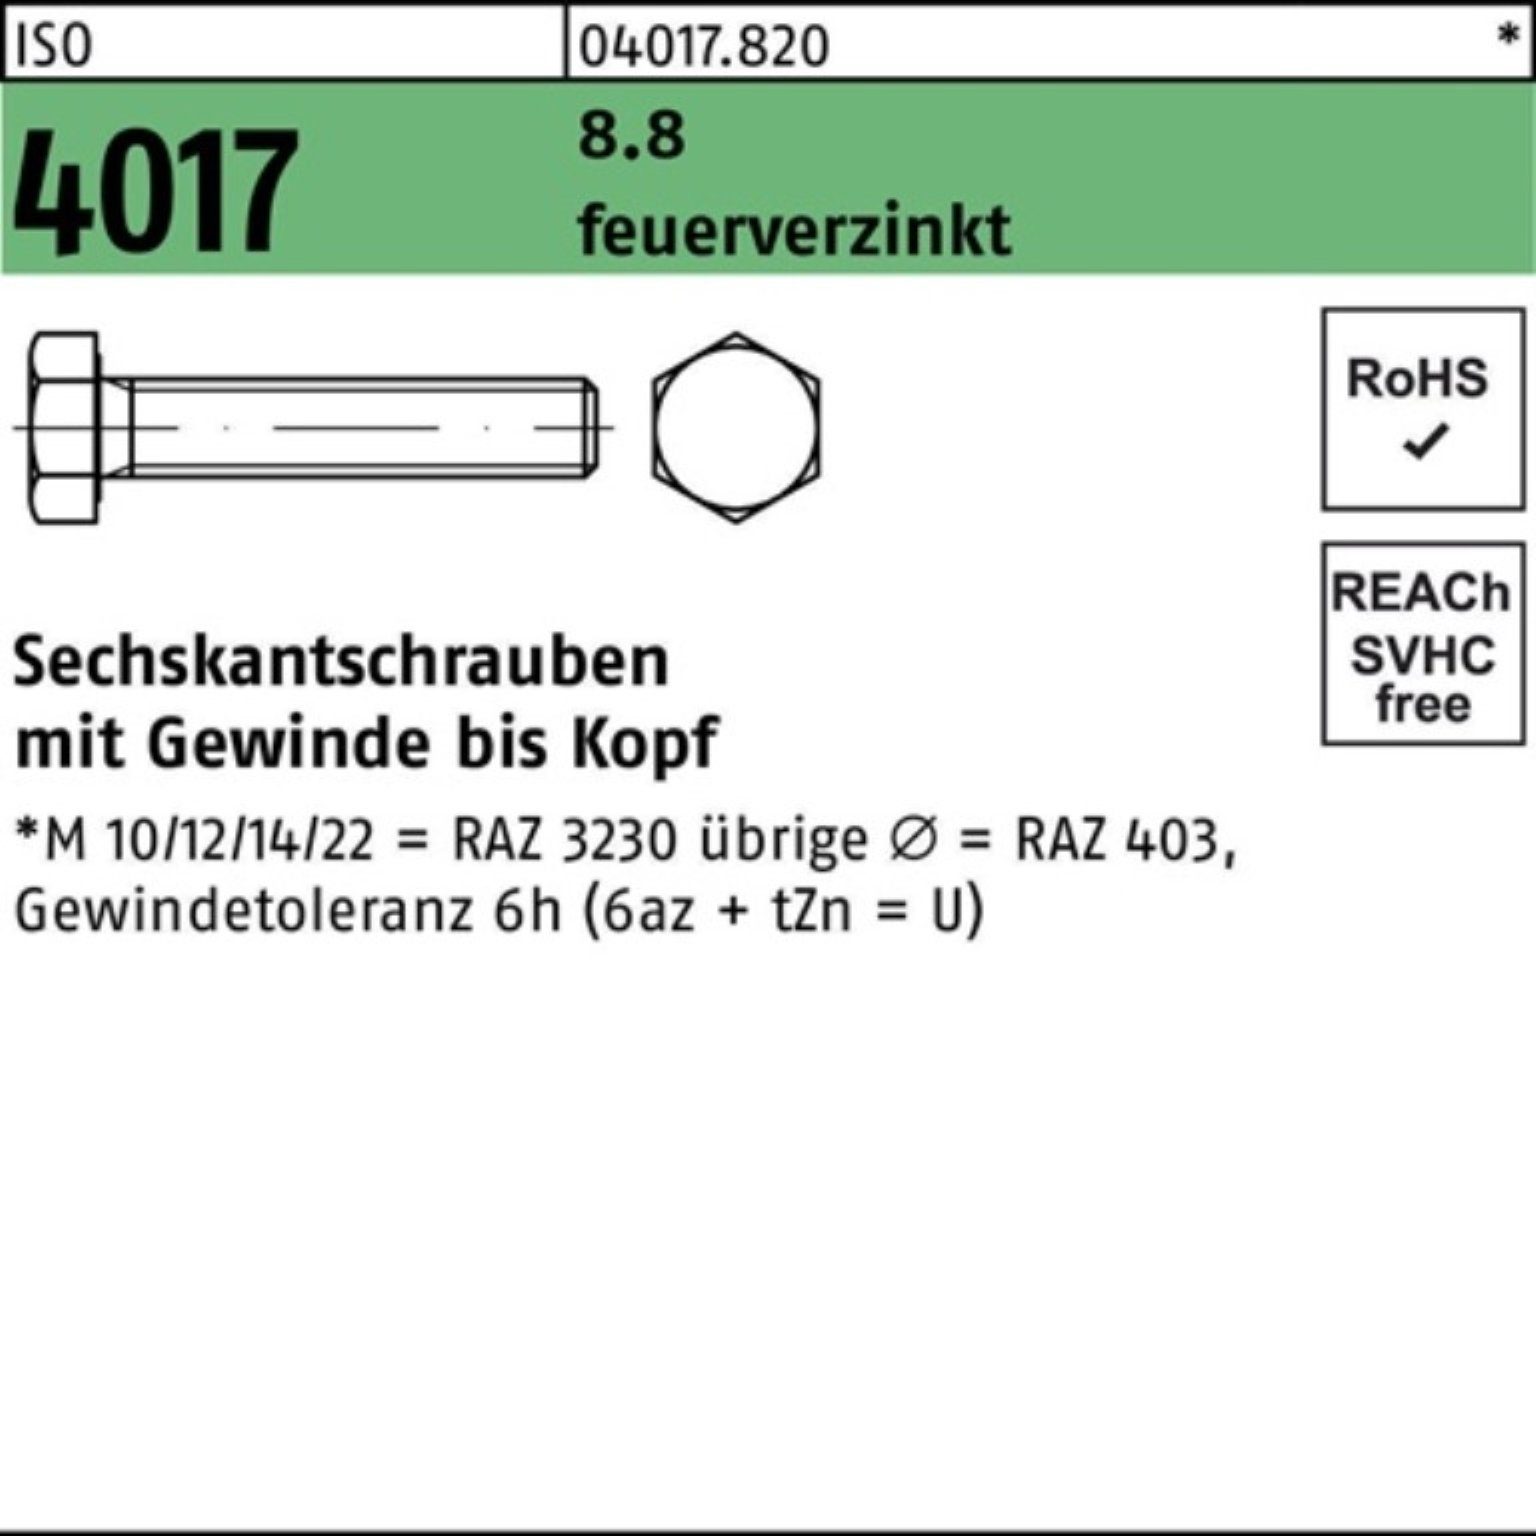 Bufab Sechskantschraube 200er Pack Sechskantschraube ISO 4017 VG M8x 16 8.8 feuerverz. 200 St